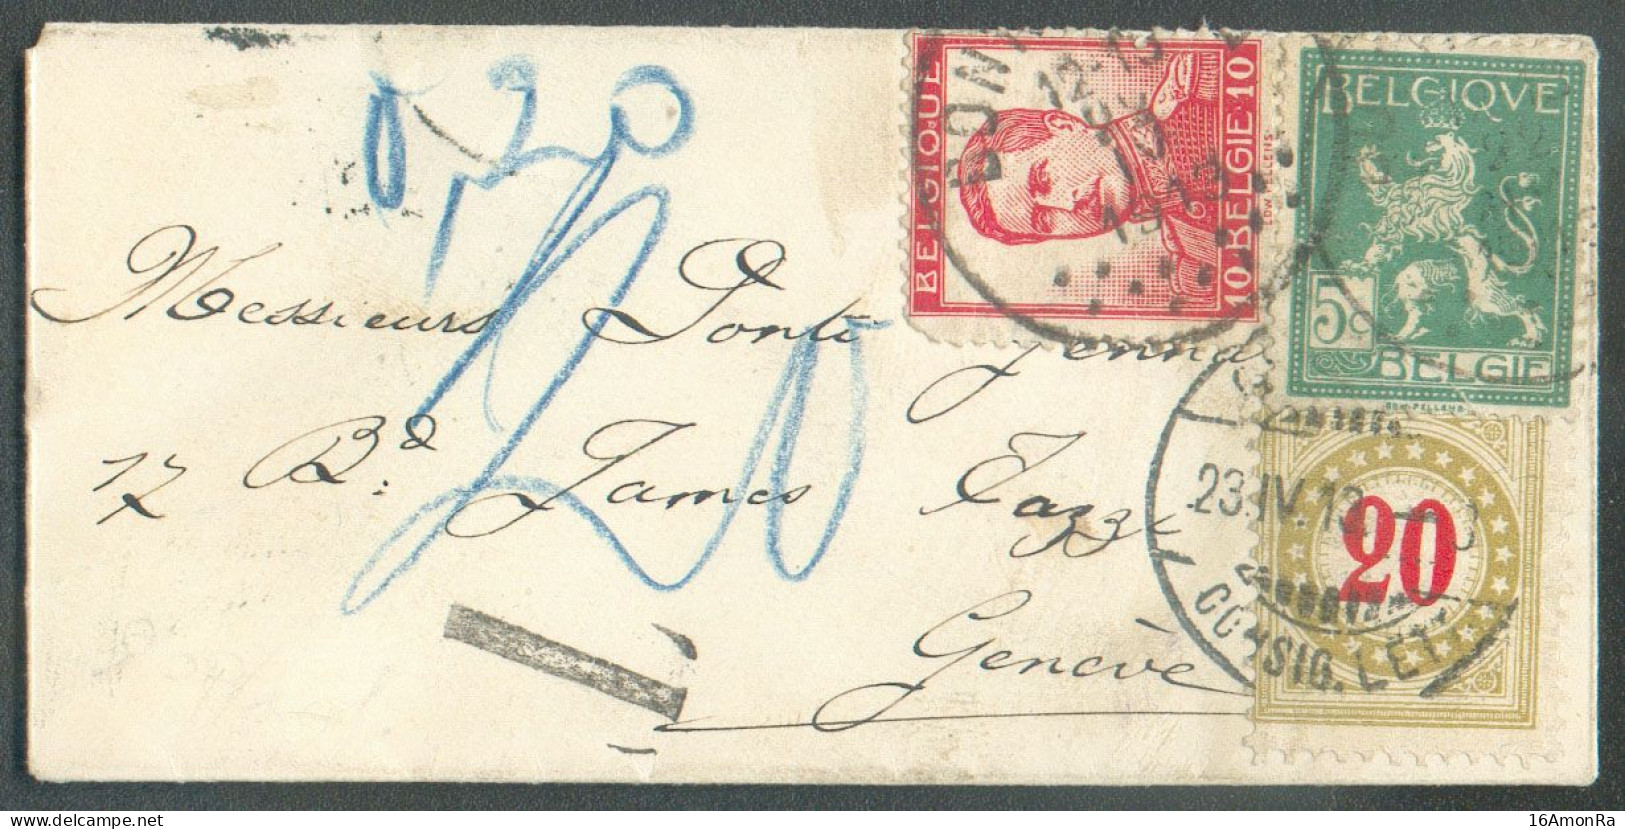 N°110-118 - 5 Et 10c. PELLENS Obl. Sc BONSECOURS Sur Enveloppe Carte De Visite Du 22-IV-1913 Vers Genève (Suisse) Et Tax - 1912 Pellens